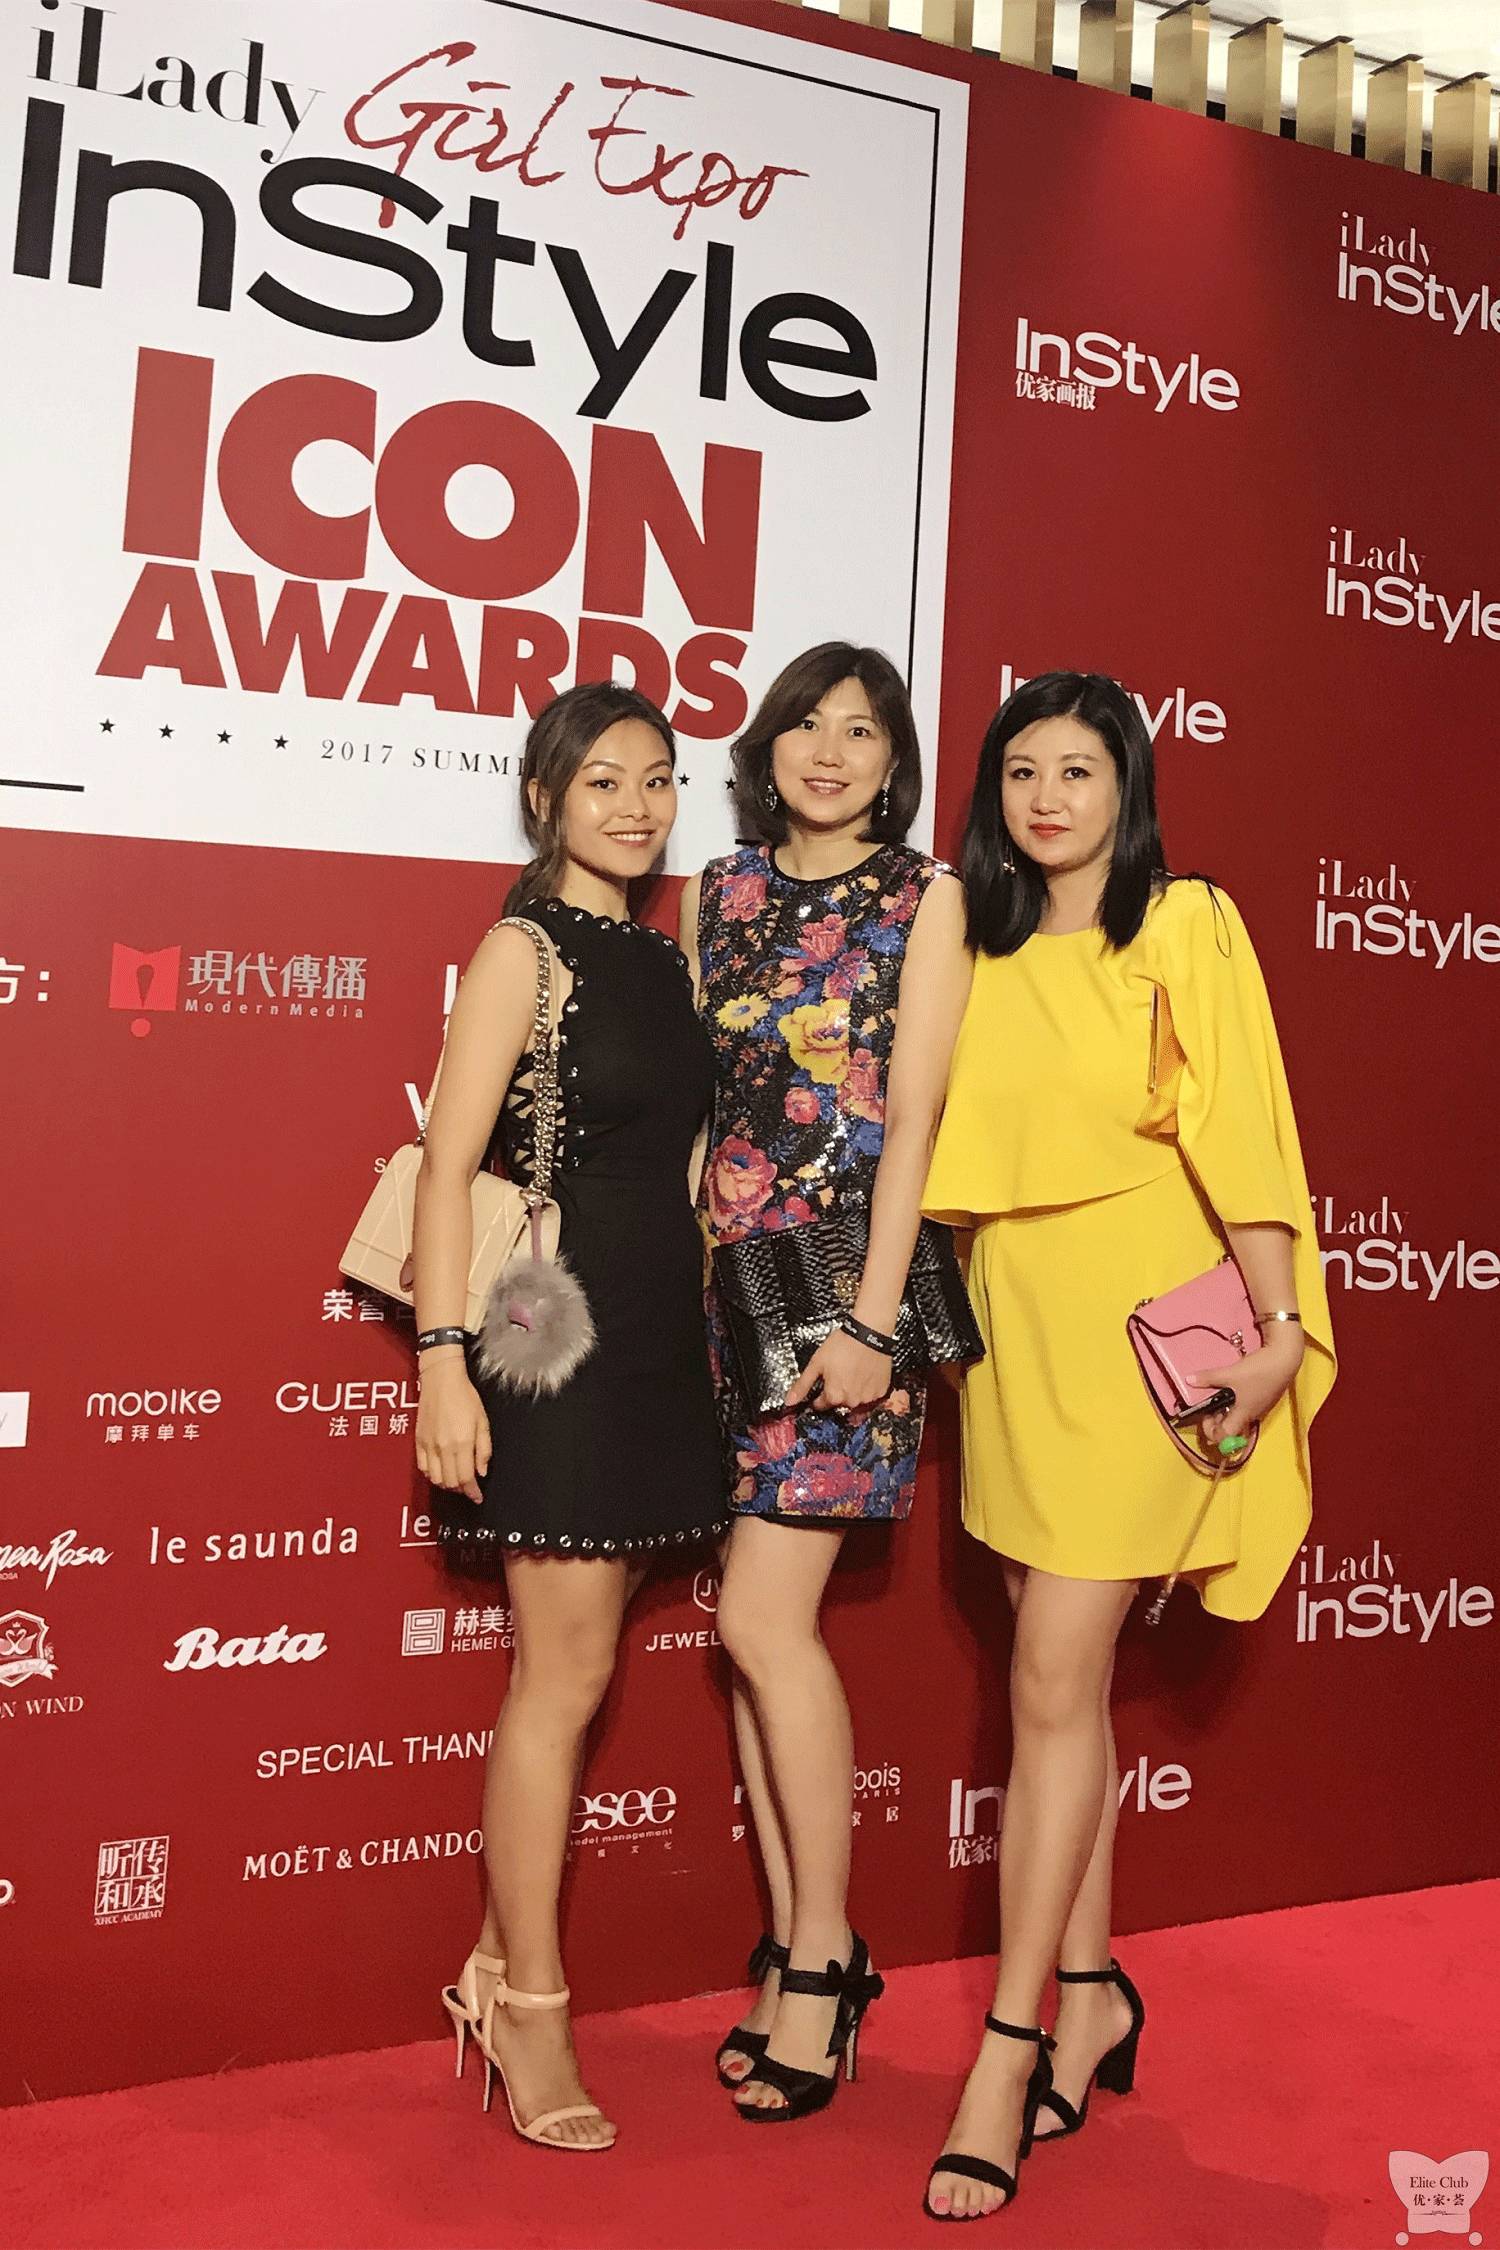 【上海优家荟报道】instyle ilady icon awards年度偶像盛典,8月23日